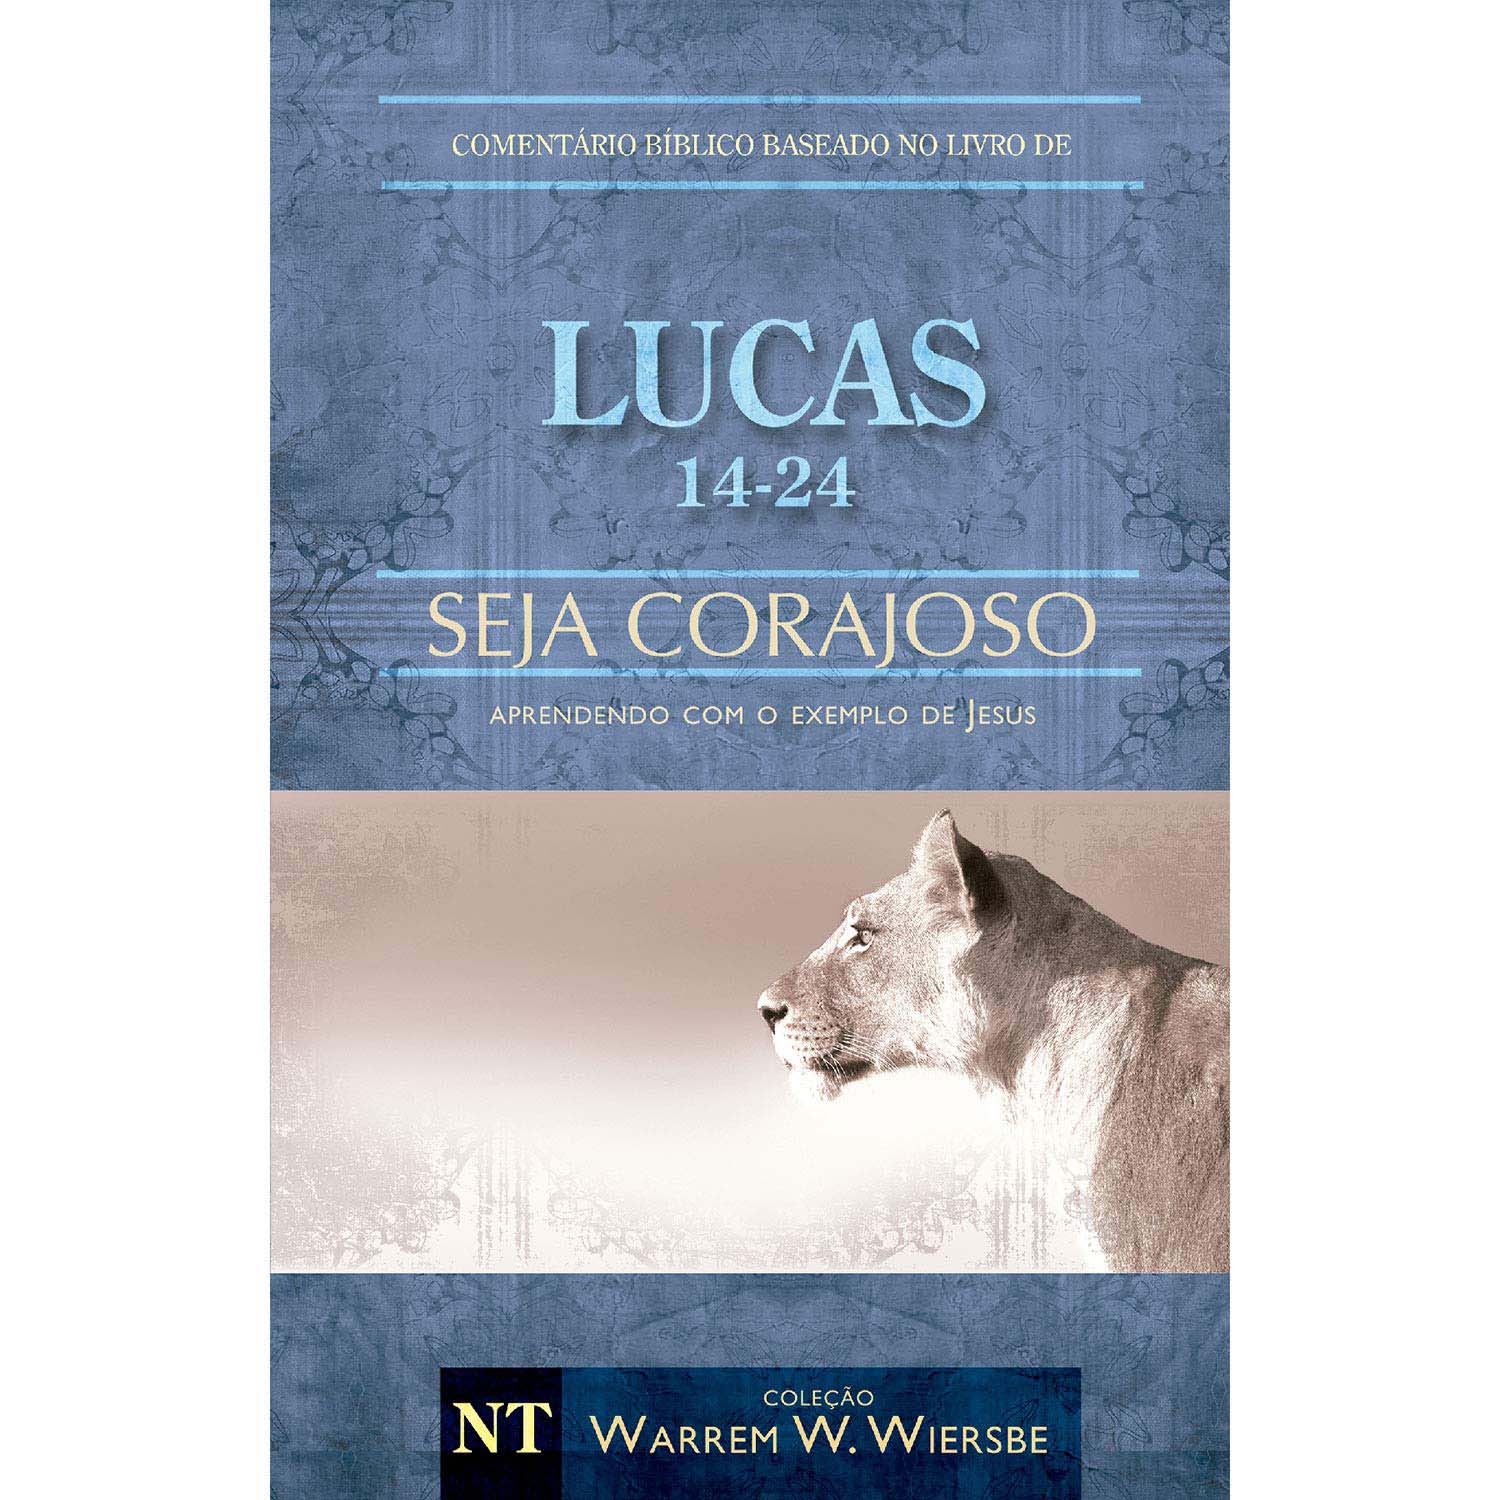 Comentário Bíblico Wiersbe Em Fascículos - Seja Corajoso - Lucas - Volume 2